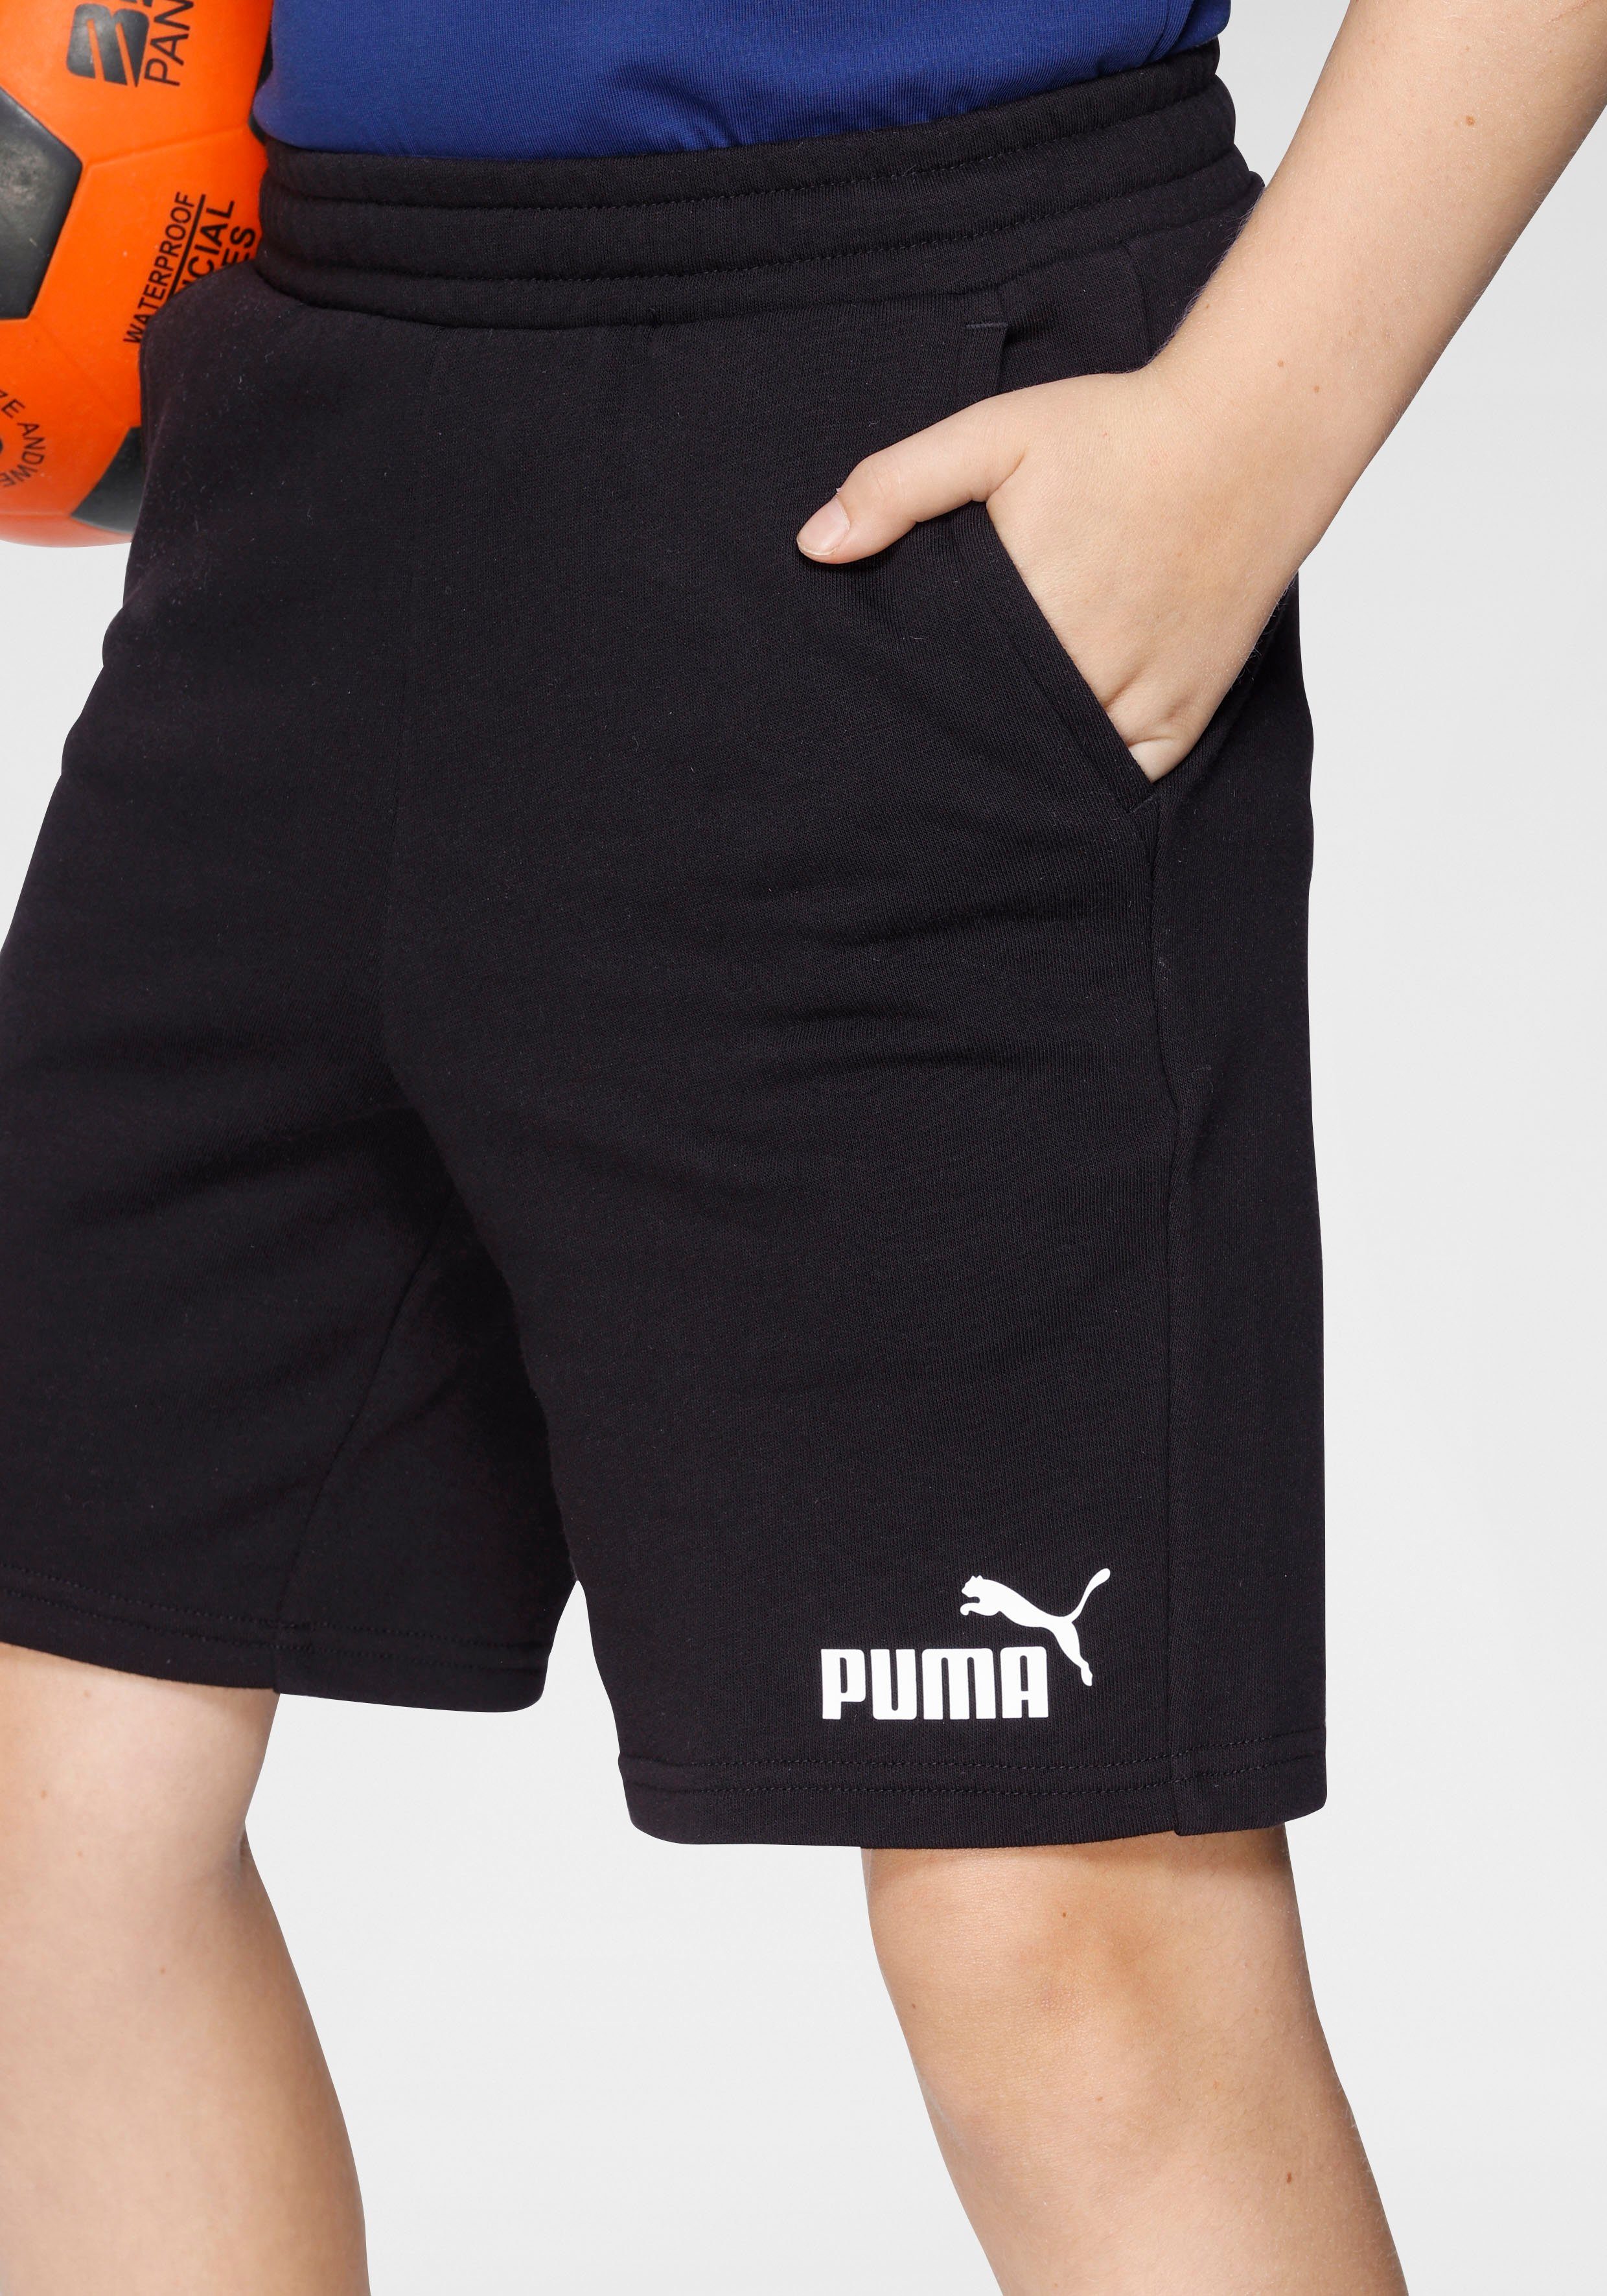 PUMA Shorts Black B SWEAT ESS Puma SHORTS